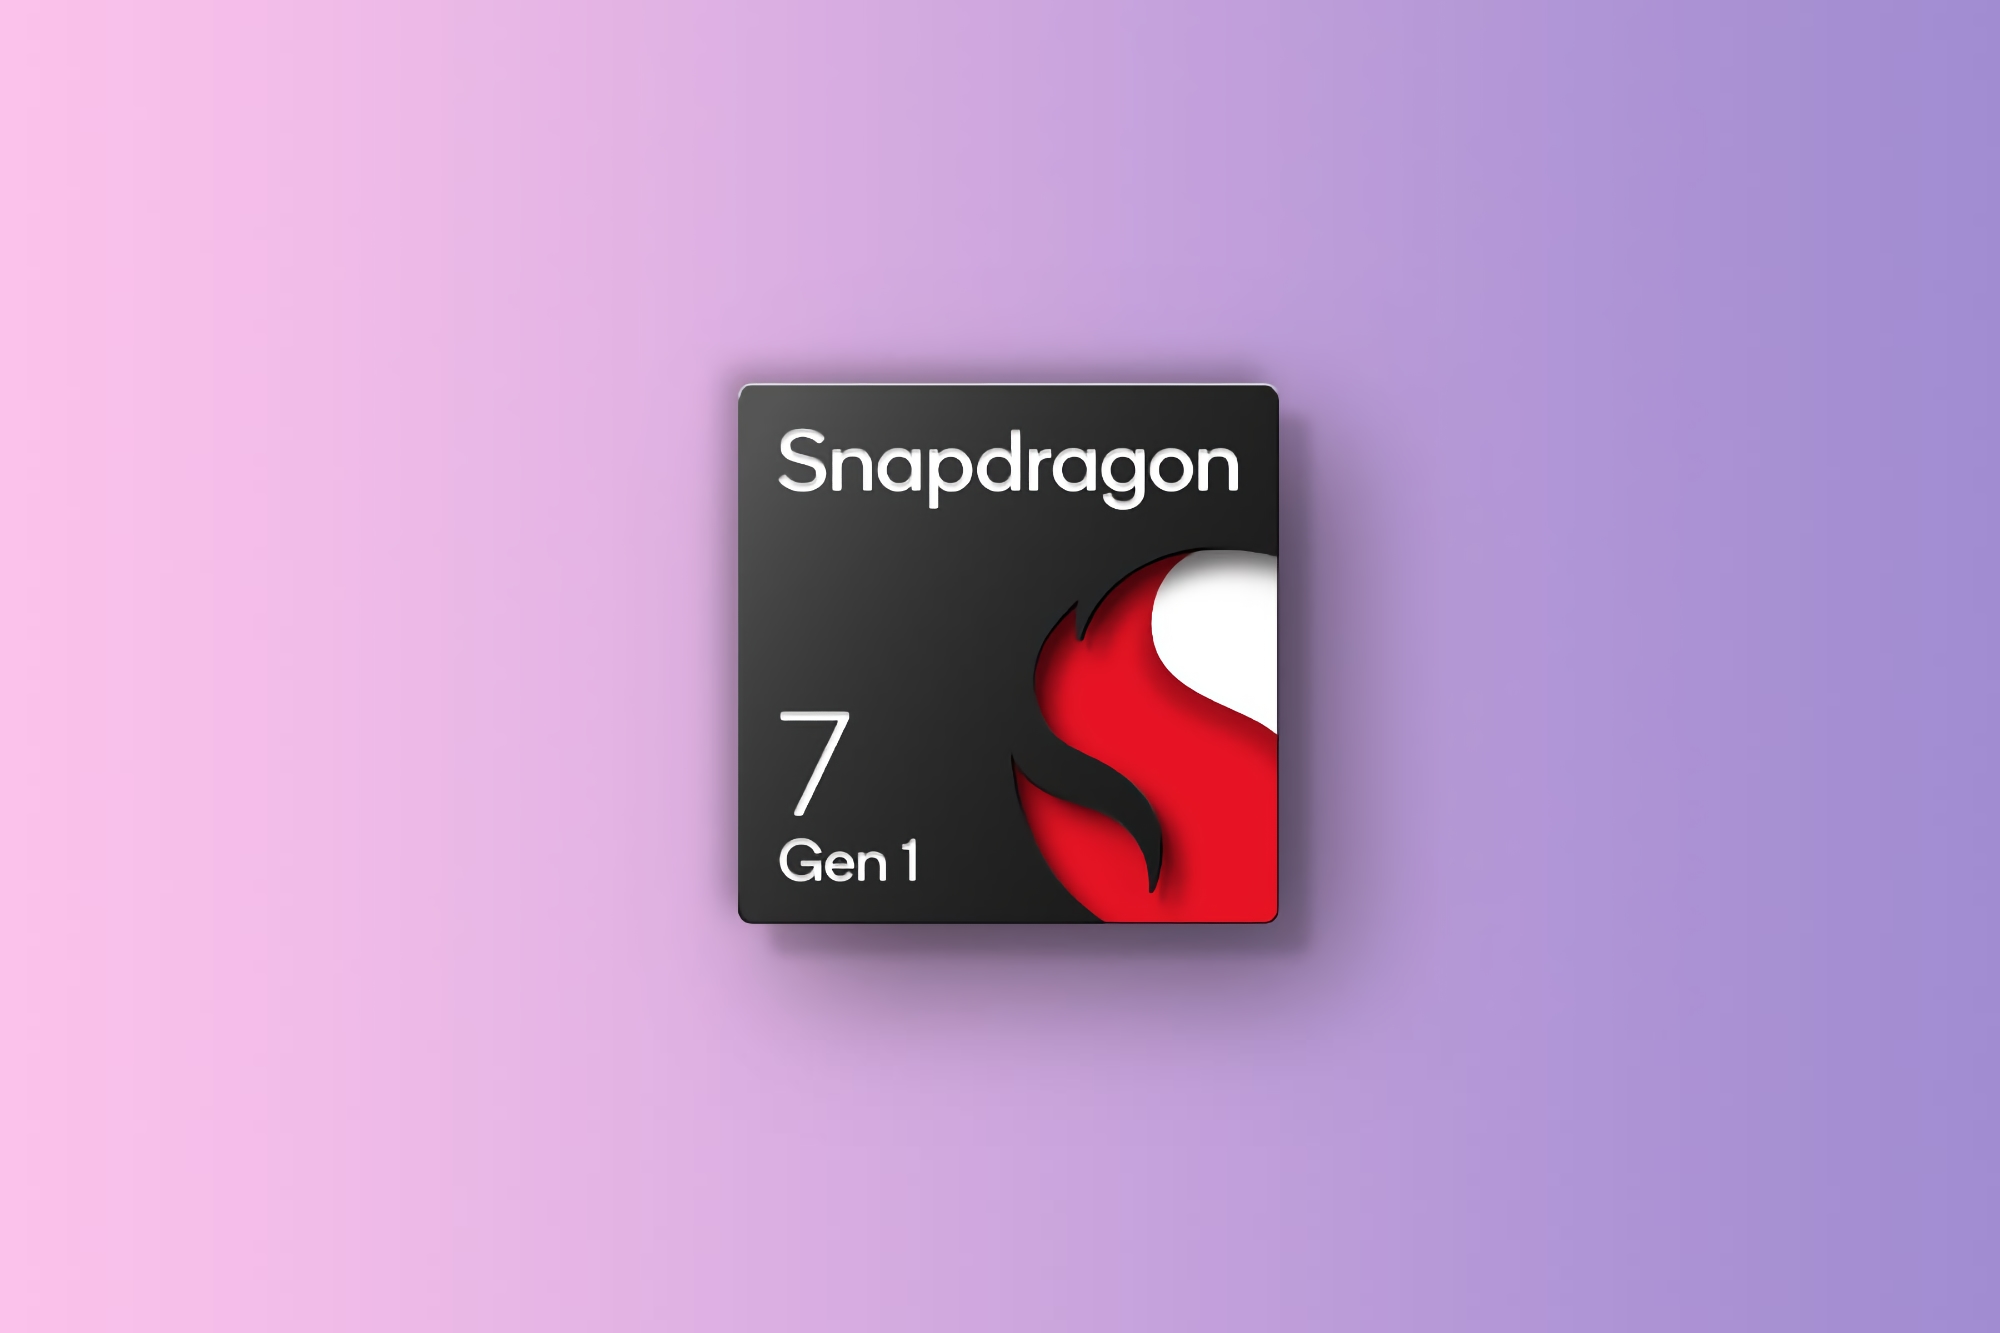 Sucesor del Snapdragon 7 Gen 1: Qualcomm trabaja en un nuevo chip de la serie Snapdragon 7 con estructura de núcleo tri-clúster y 2,4 GHz